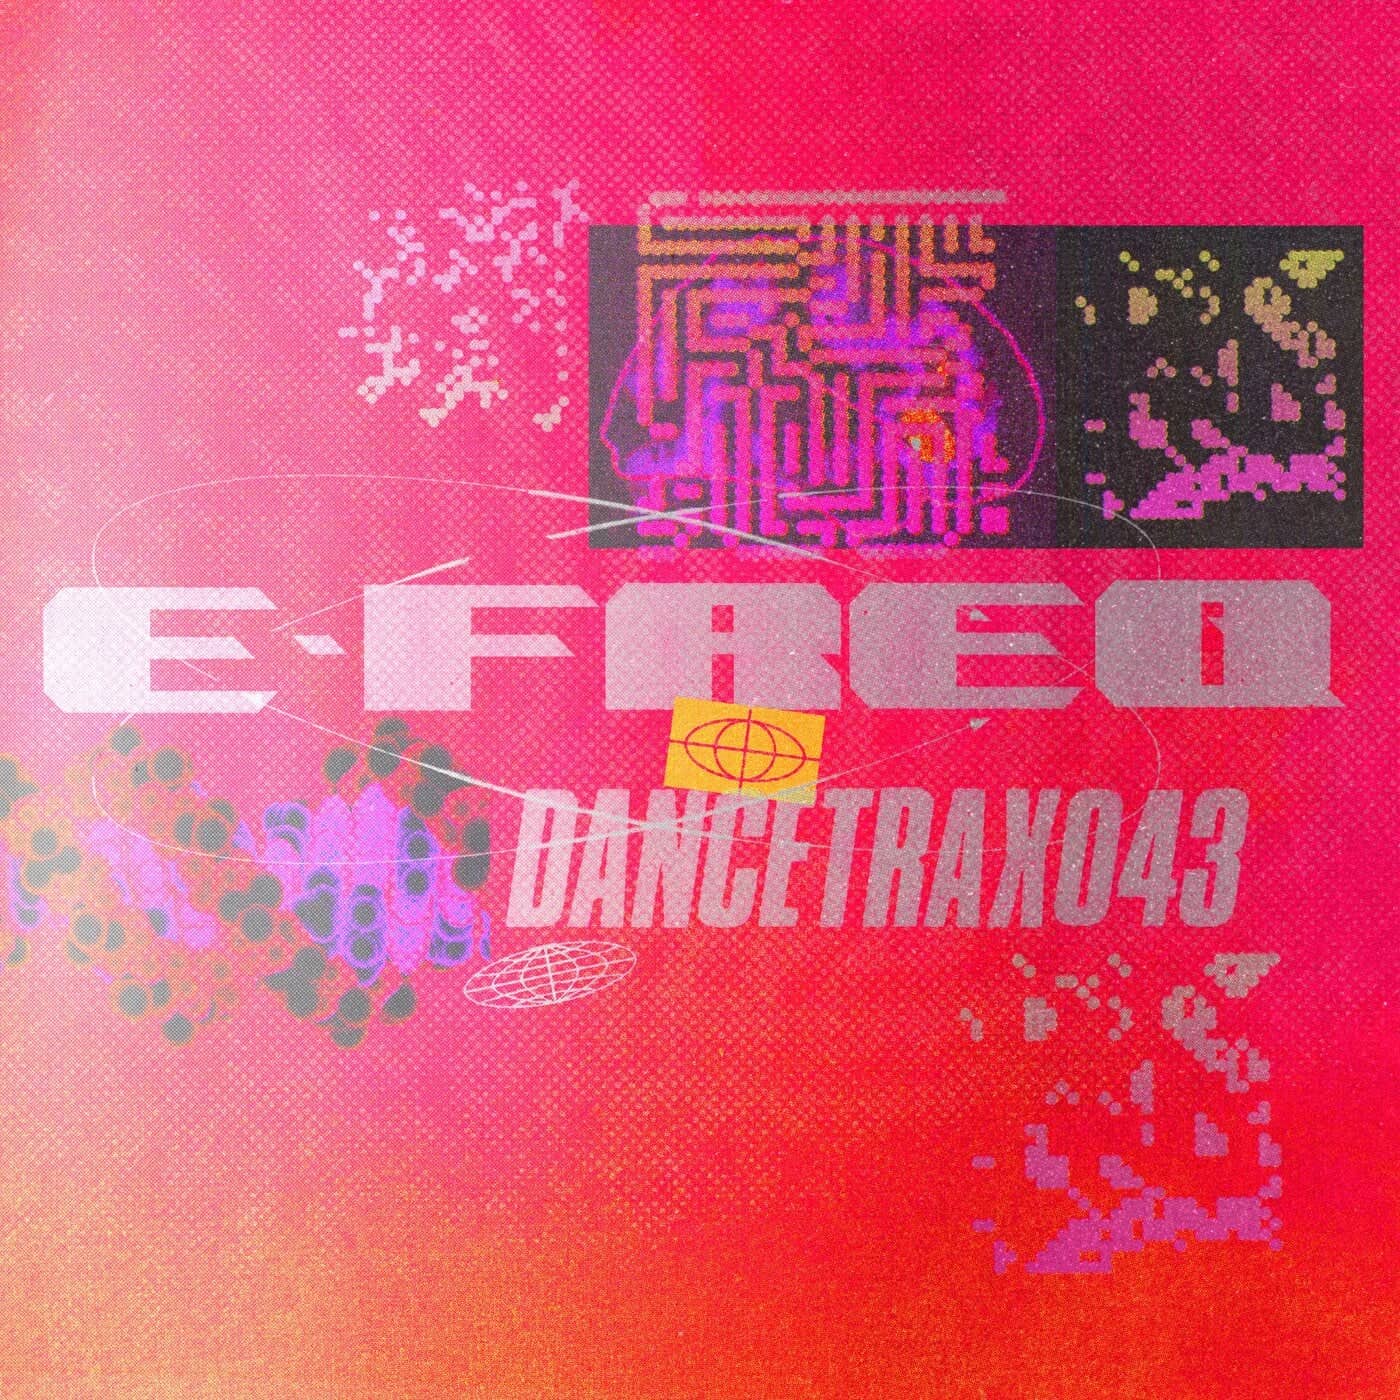 Download Mak & Pasteman, DJ Haus, e-freq - Dance Trax, Vol. 43 on Electrobuzz